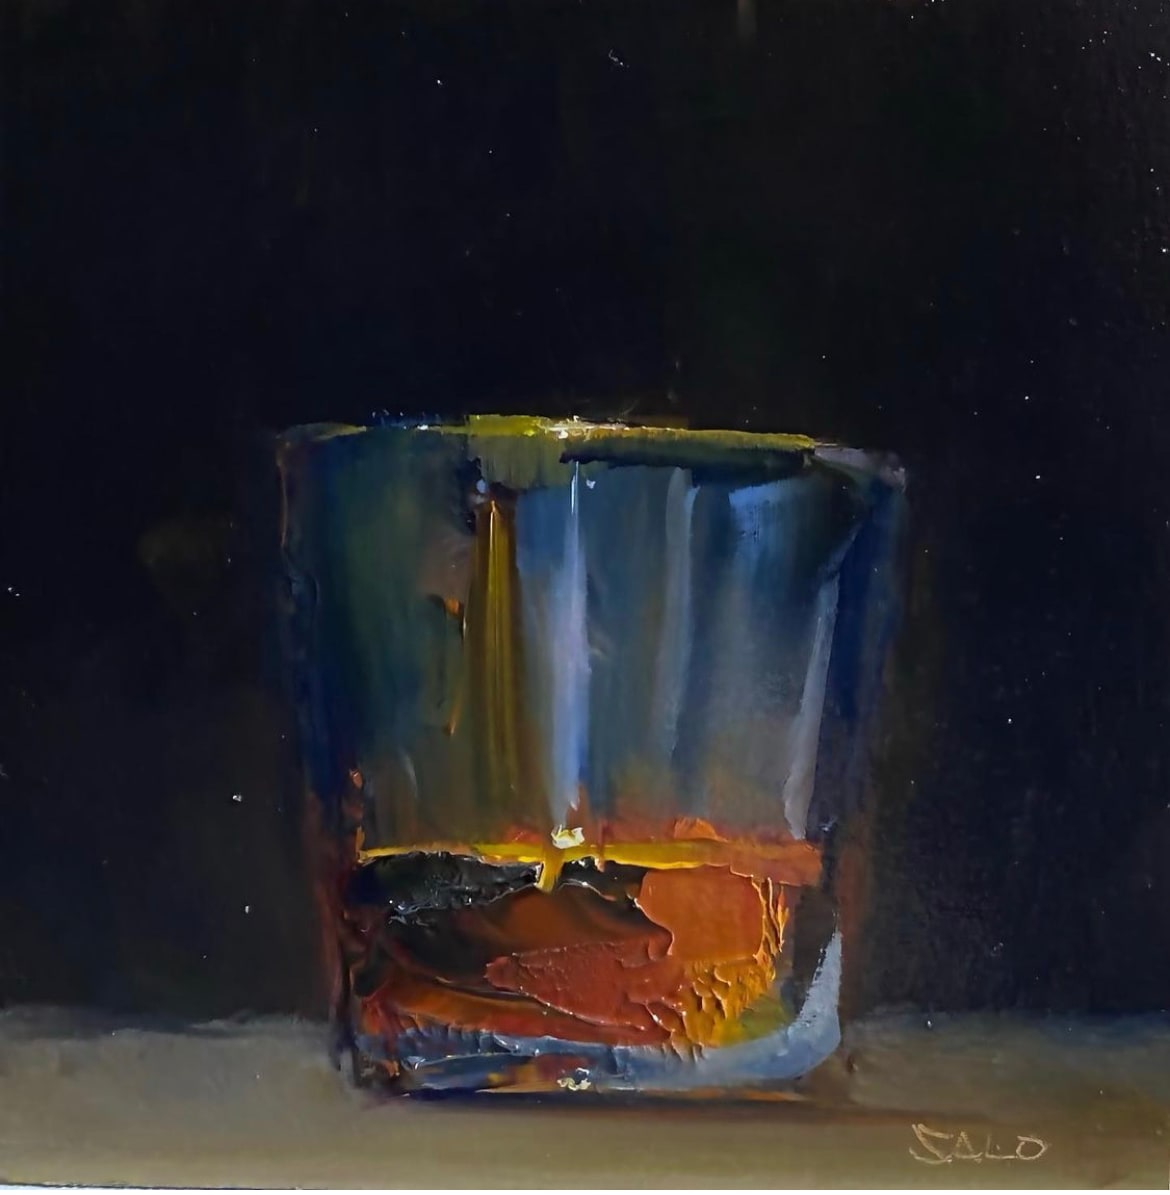 Whisky Glass 4 by Steve Salo 